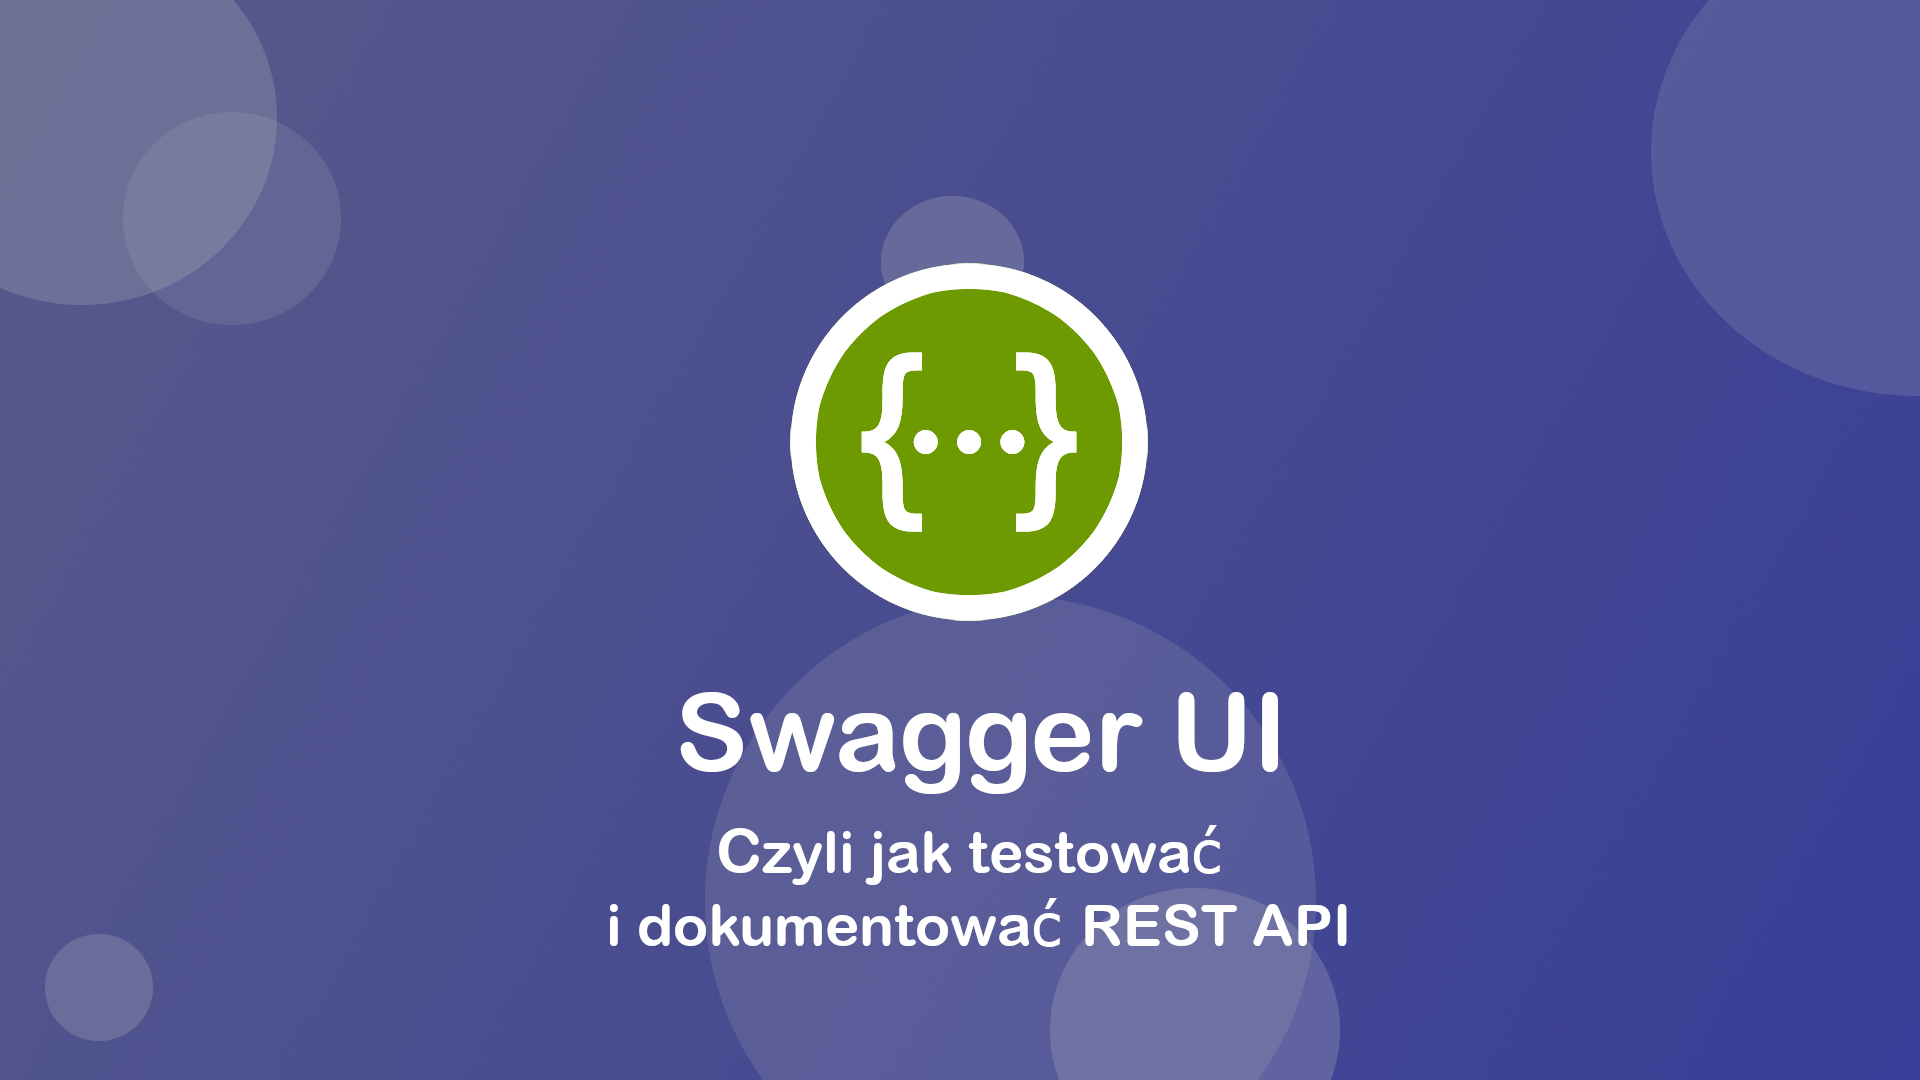 Swagger UI – Czyli jak testować i dokumentować REST API